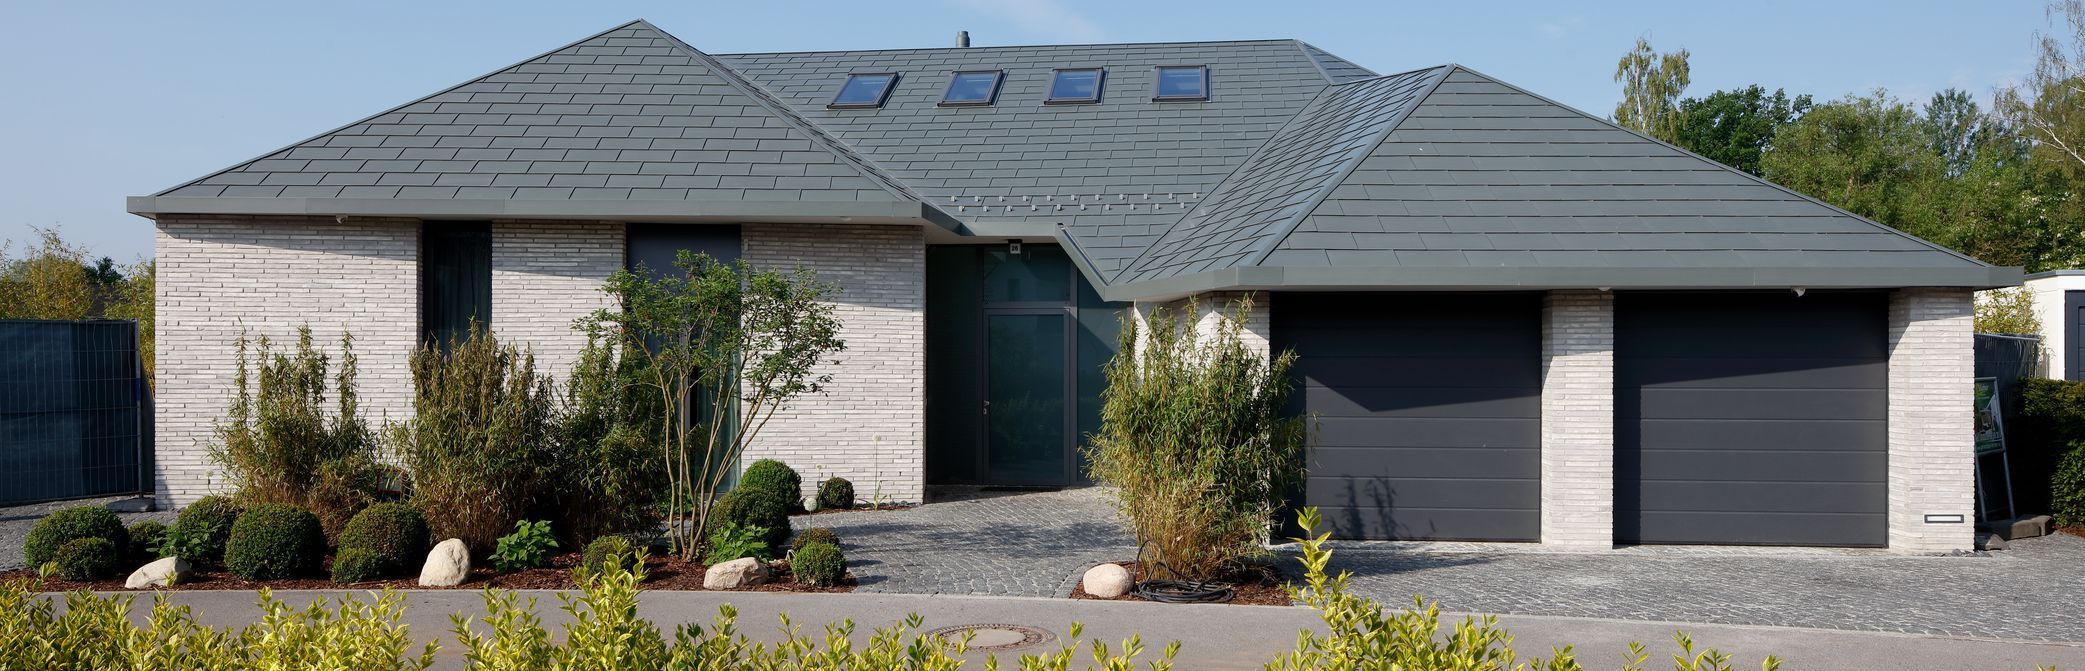 Maison individuelle avec couverture toit zinc en bardeaux